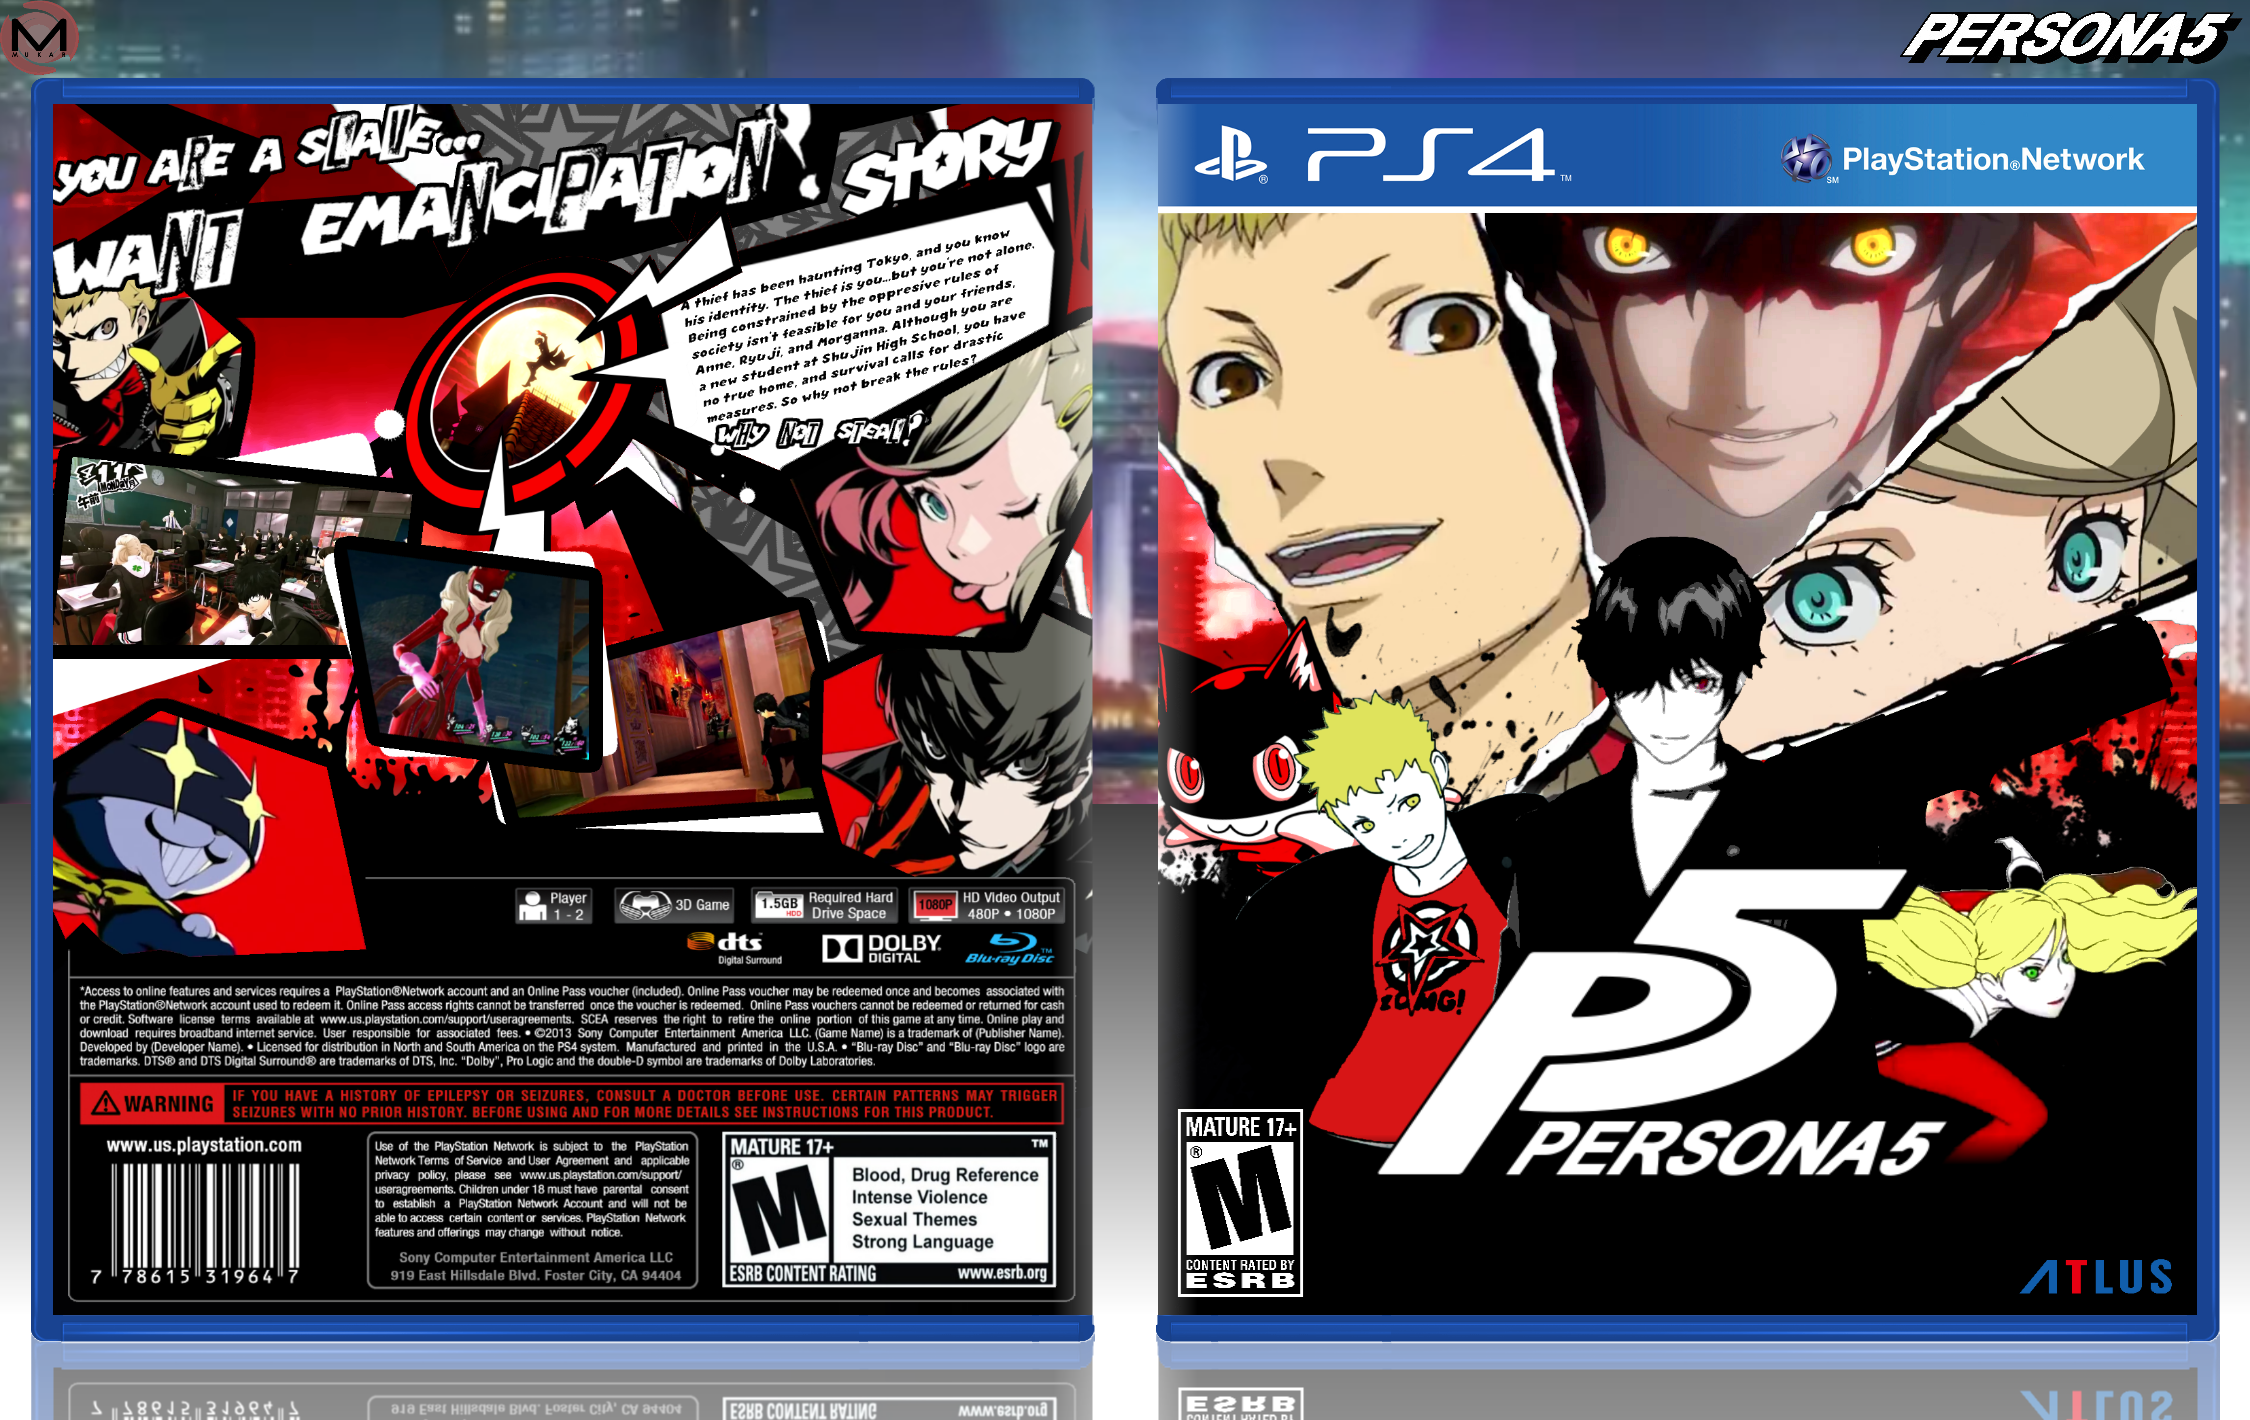 Persona 5 box cover